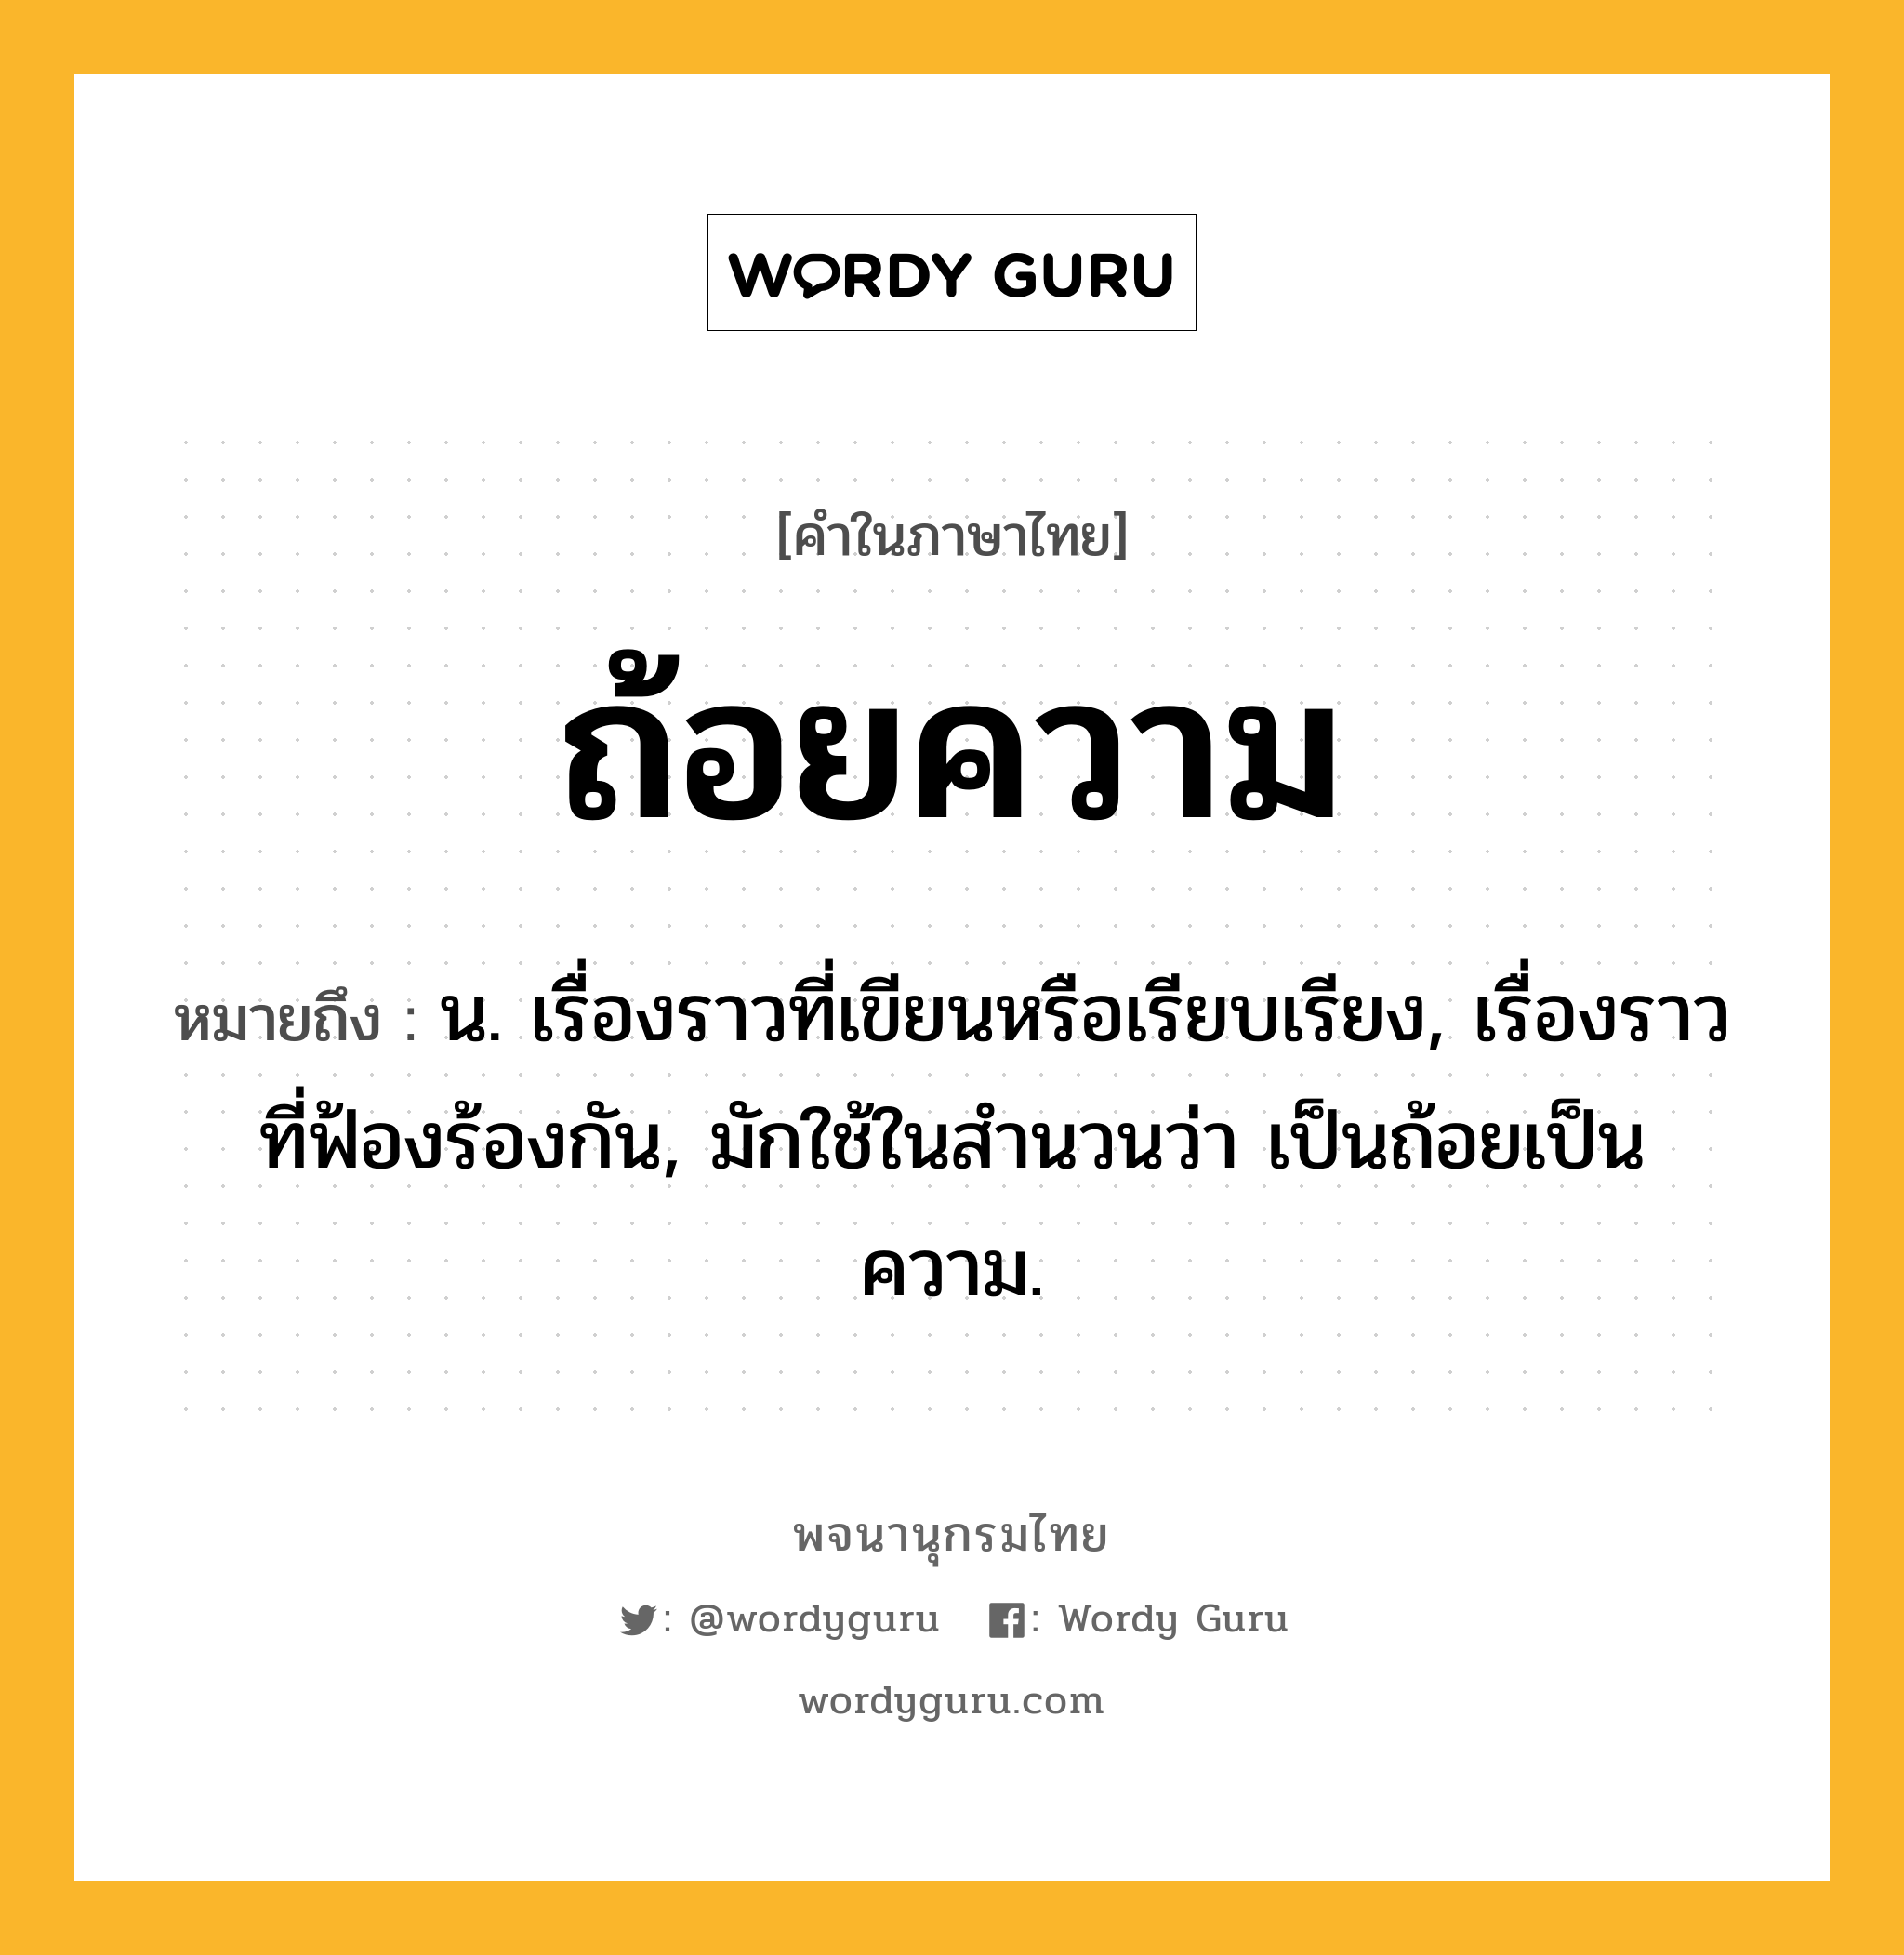 ถ้อยความ หมายถึงอะไร?, คำในภาษาไทย ถ้อยความ หมายถึง น. เรื่องราวที่เขียนหรือเรียบเรียง, เรื่องราวที่ฟ้องร้องกัน, มักใช้ในสํานวนว่า เป็นถ้อยเป็นความ.